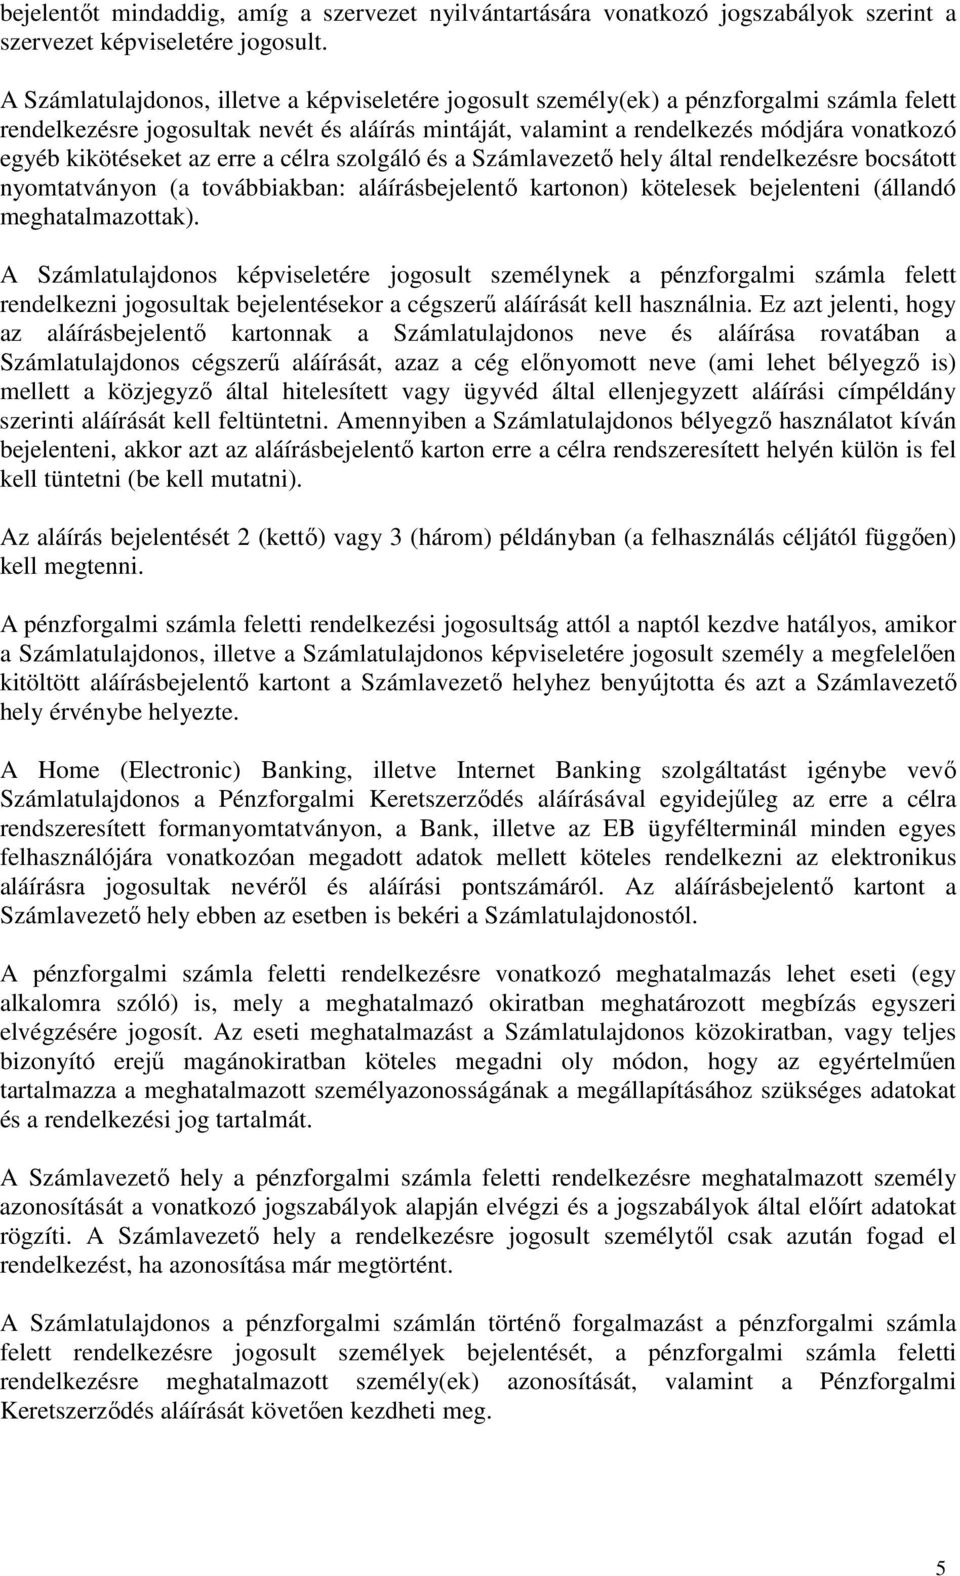 kikötéseket az erre a célra szolgáló és a Számlavezetı hely által rendelkezésre bocsátott nyomtatványon (a továbbiakban: aláírásbejelentı kartonon) kötelesek bejelenteni (állandó meghatalmazottak).